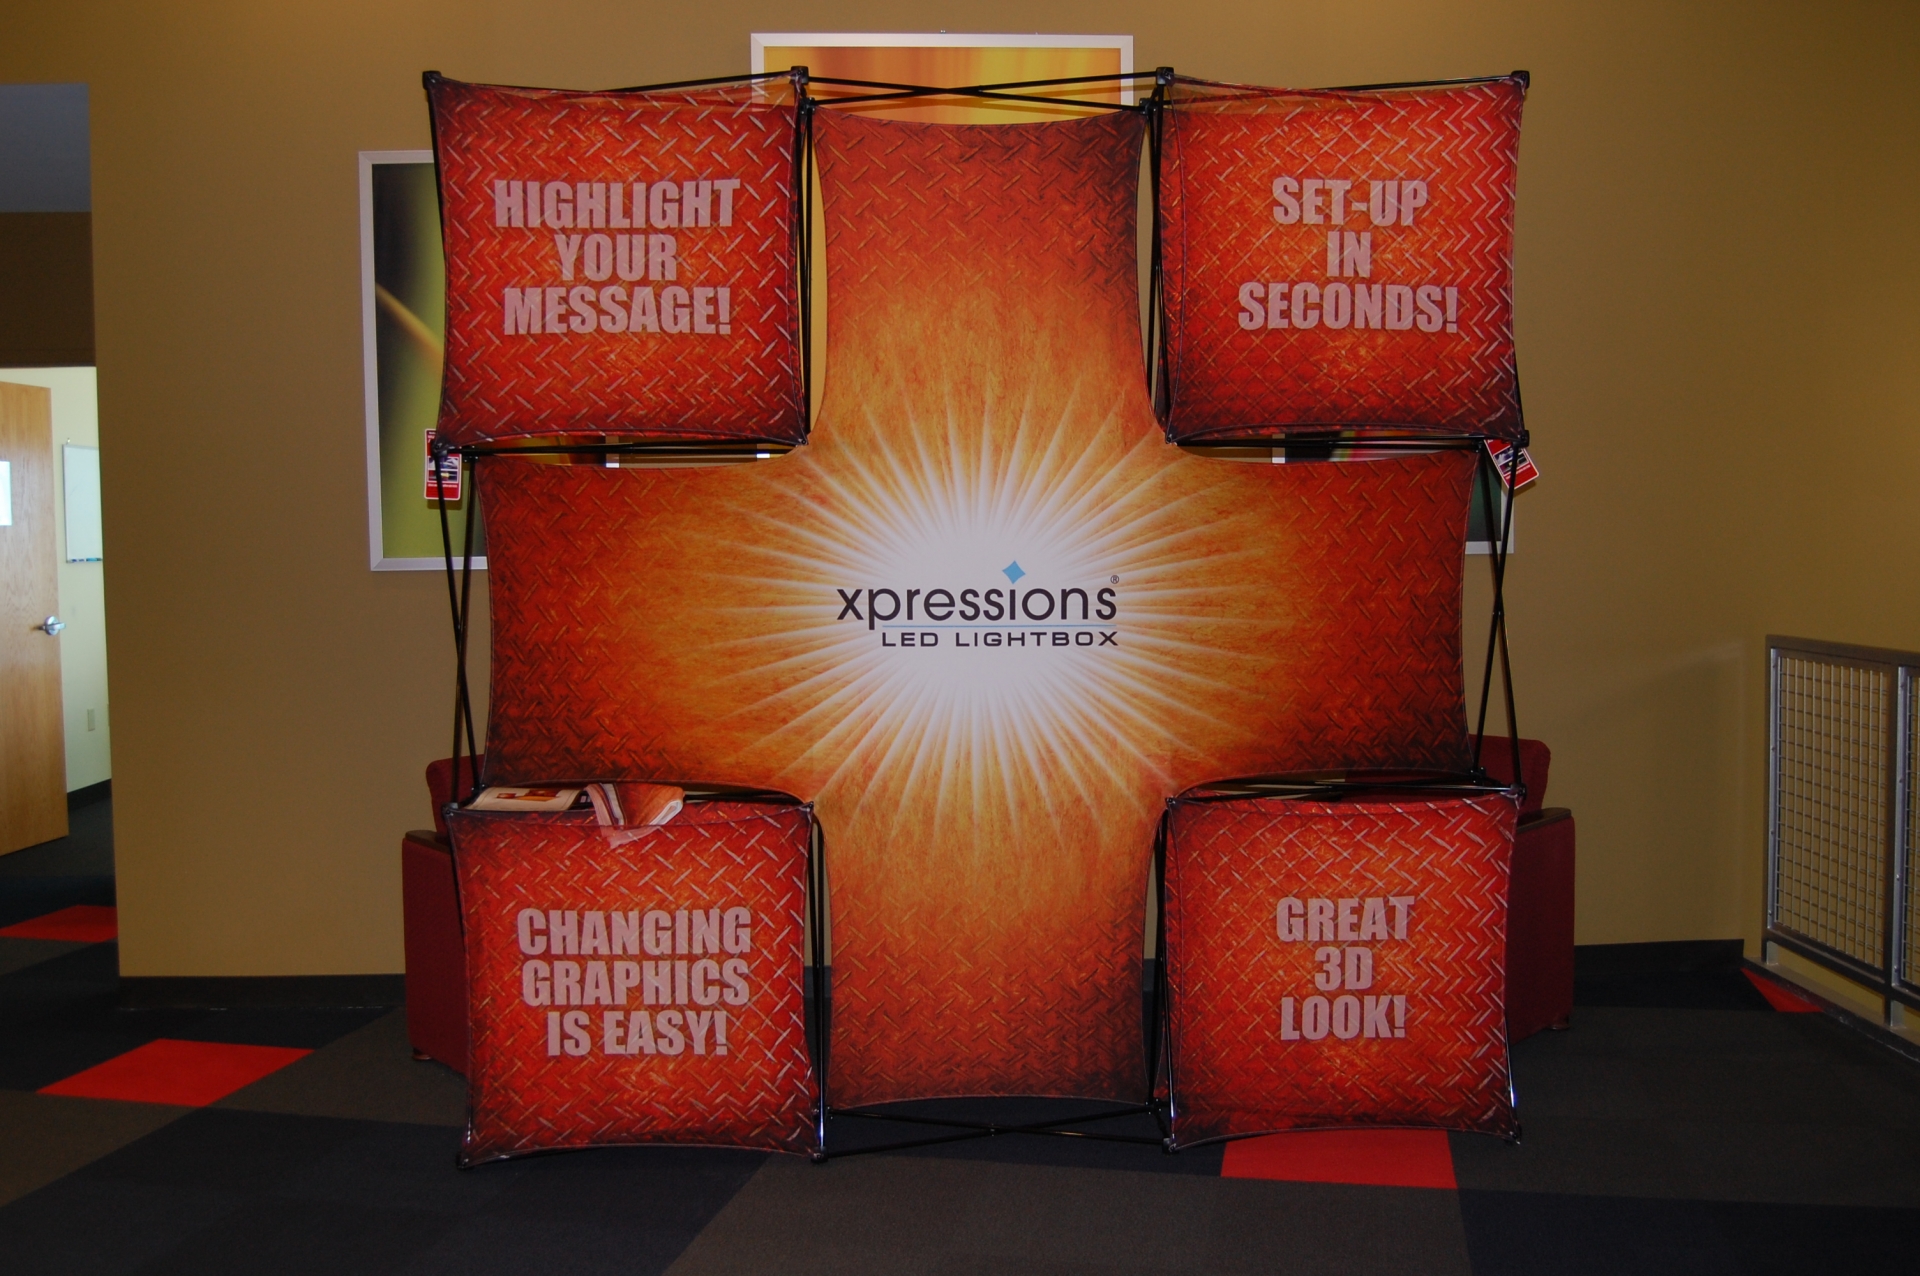 Xpressions LED Lightbox